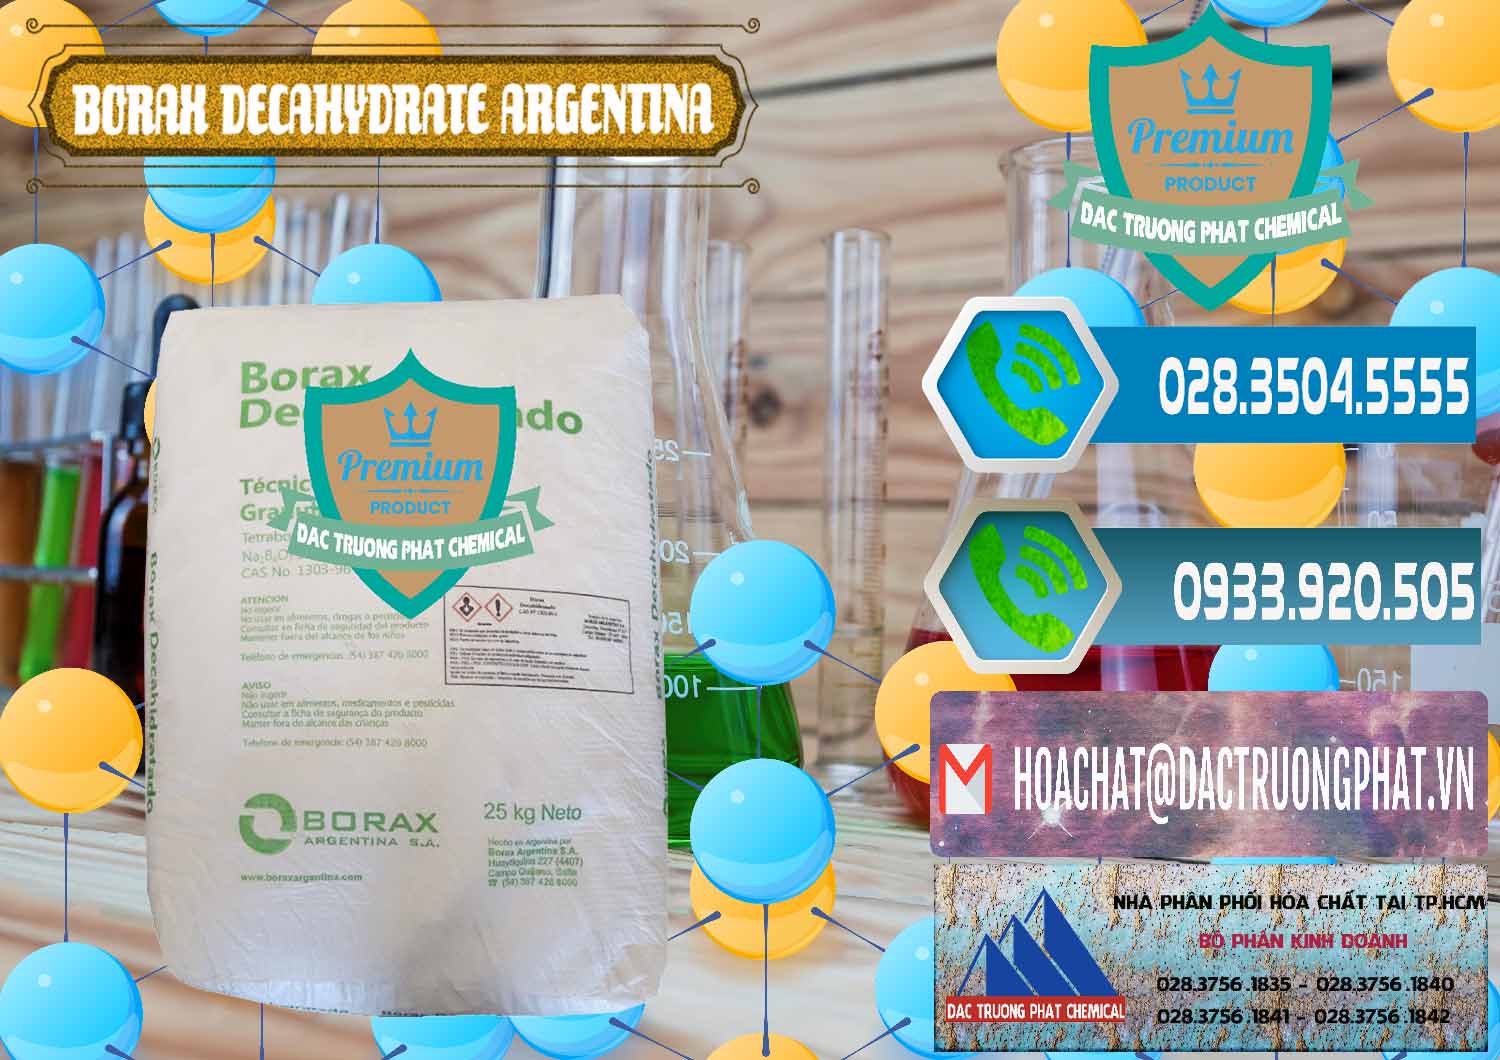 Cty bán _ cung ứng Borax Decahydrate Argentina - 0446 - Chuyên cung cấp _ bán hóa chất tại TP.HCM - congtyhoachat.net